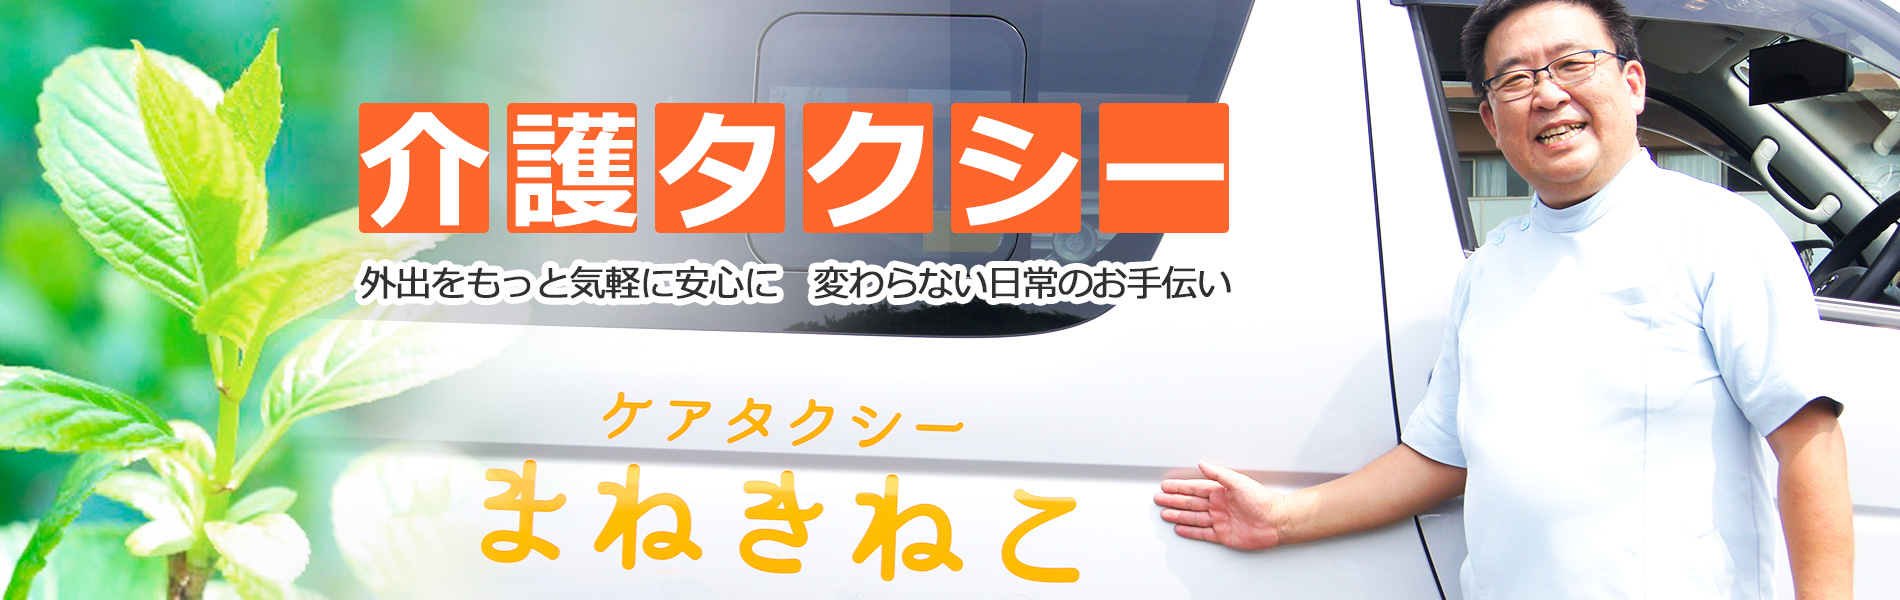 千葉県佐倉市の介護タクシー「ケアタクシーまねきねこ」